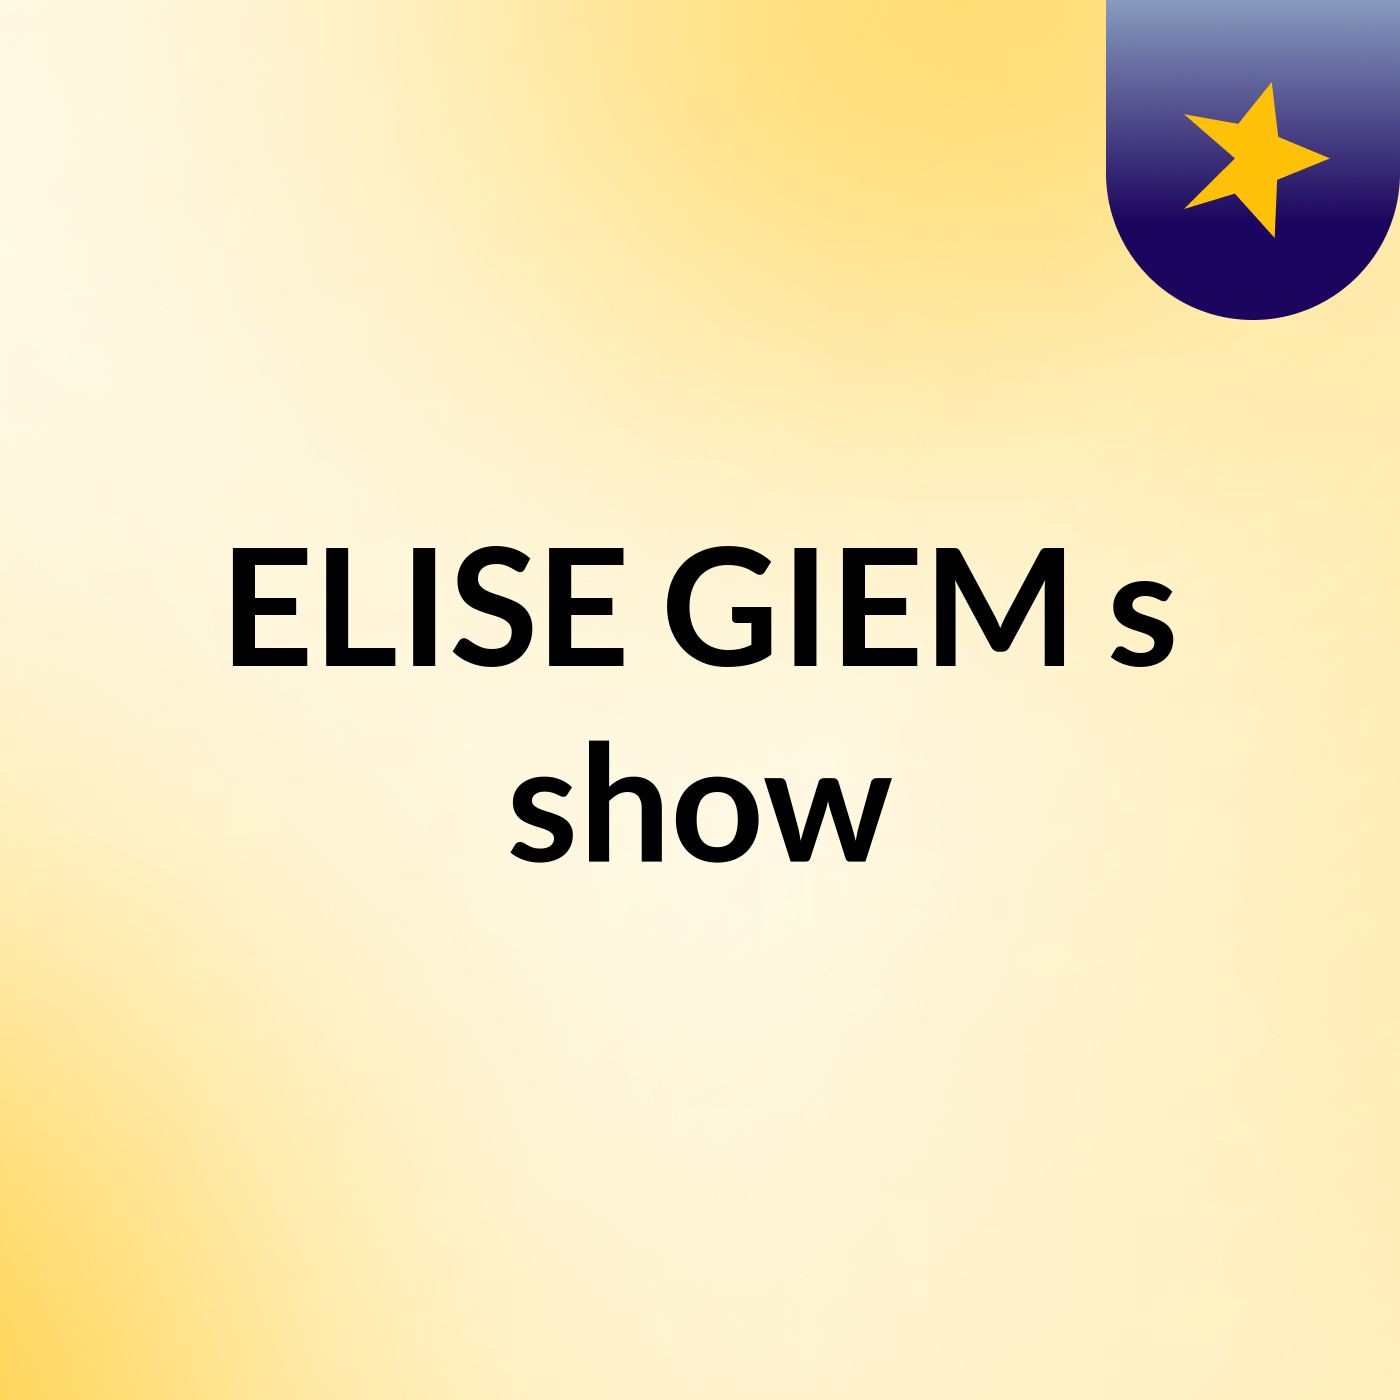 ELISE GIEM's show